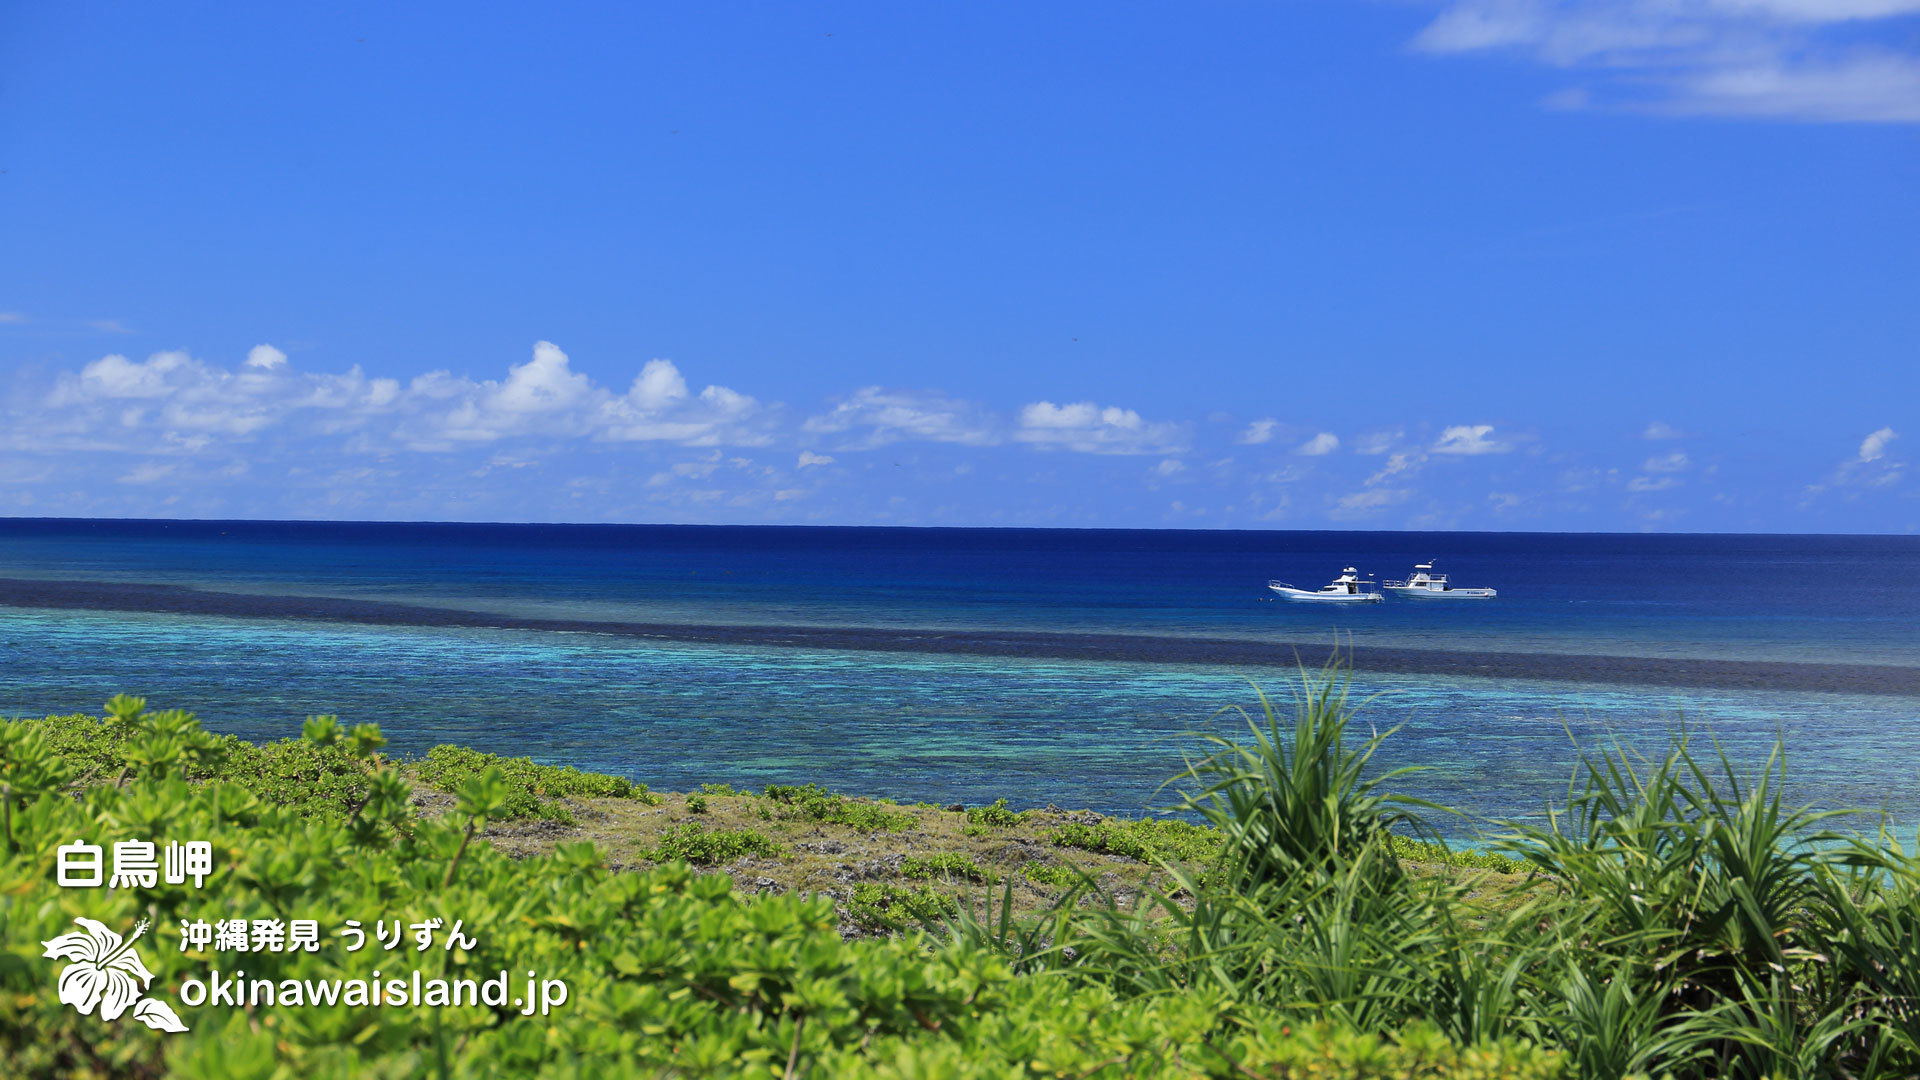 沖縄の風景 壁紙 デスクトップカレンダー 無料ダウンロード 沖縄の海